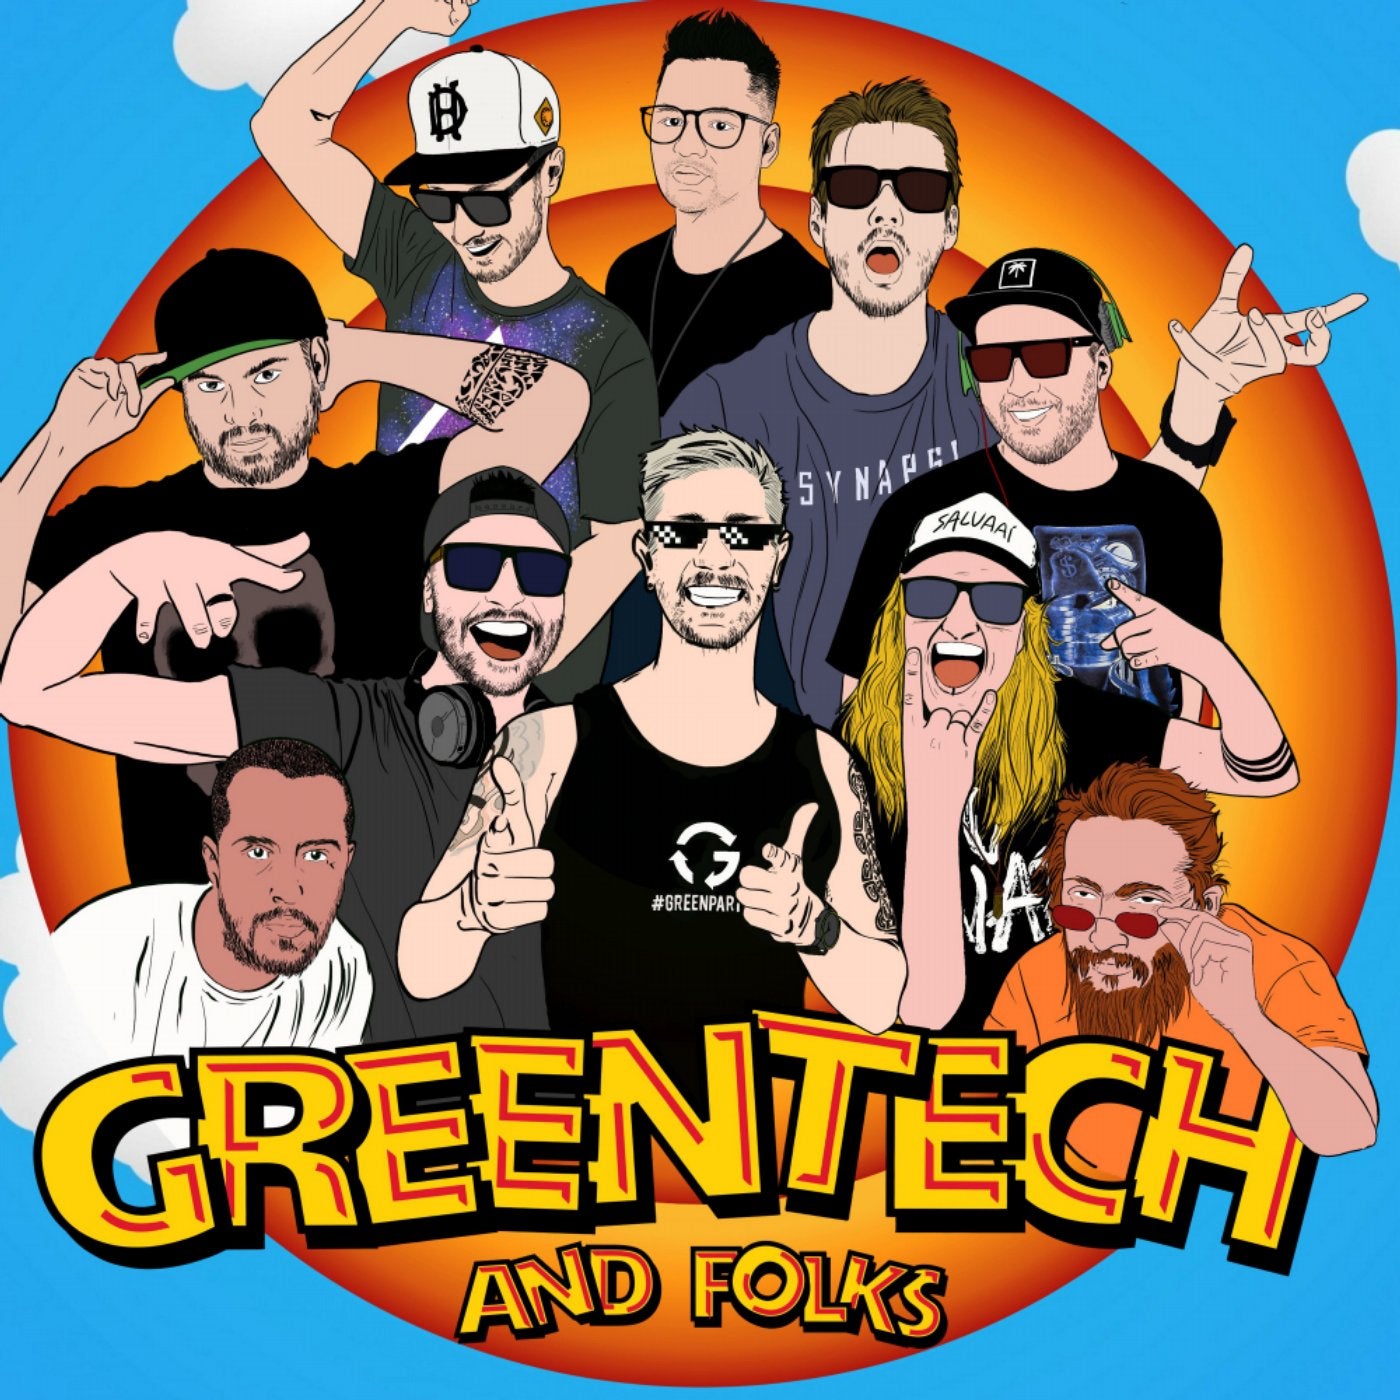 Greentech & Folks